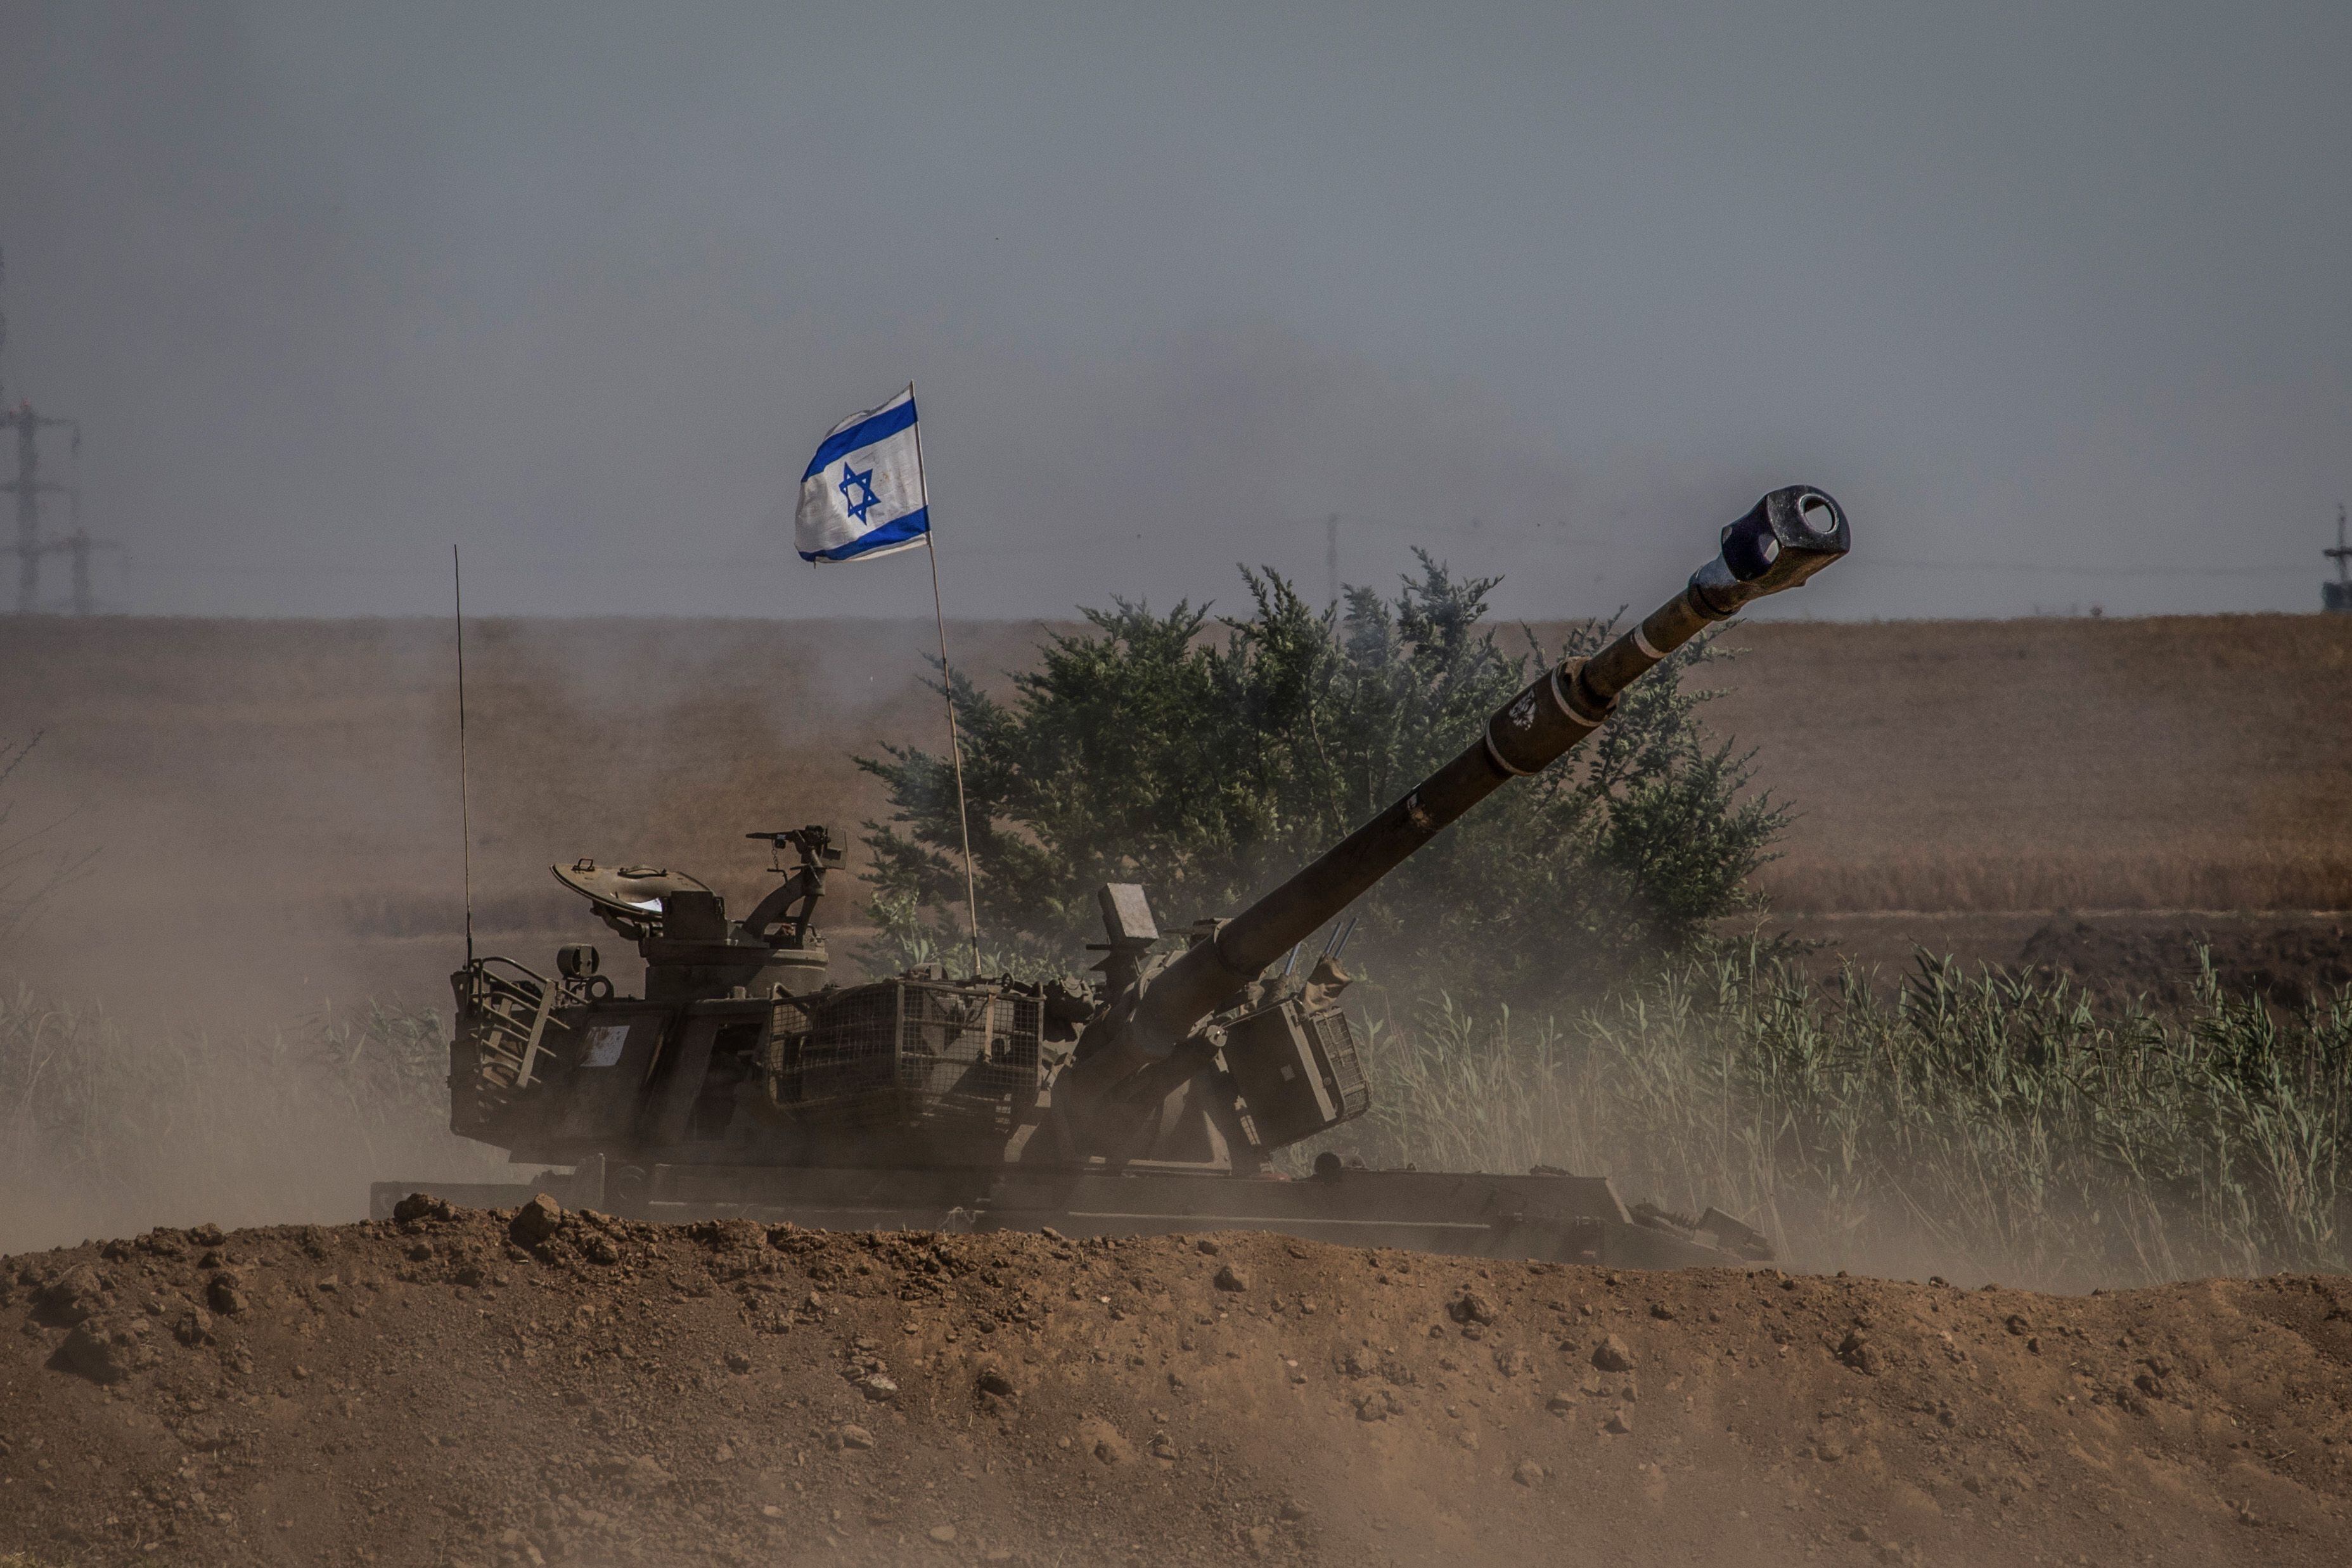 19/05/2021 Un carro de combate de Israel en los alrededores de Sderot, cerca de la frontera con la Franja de Gaza
POLITICA INTERNACIONAL
Ilia Yefimovich/dpa
